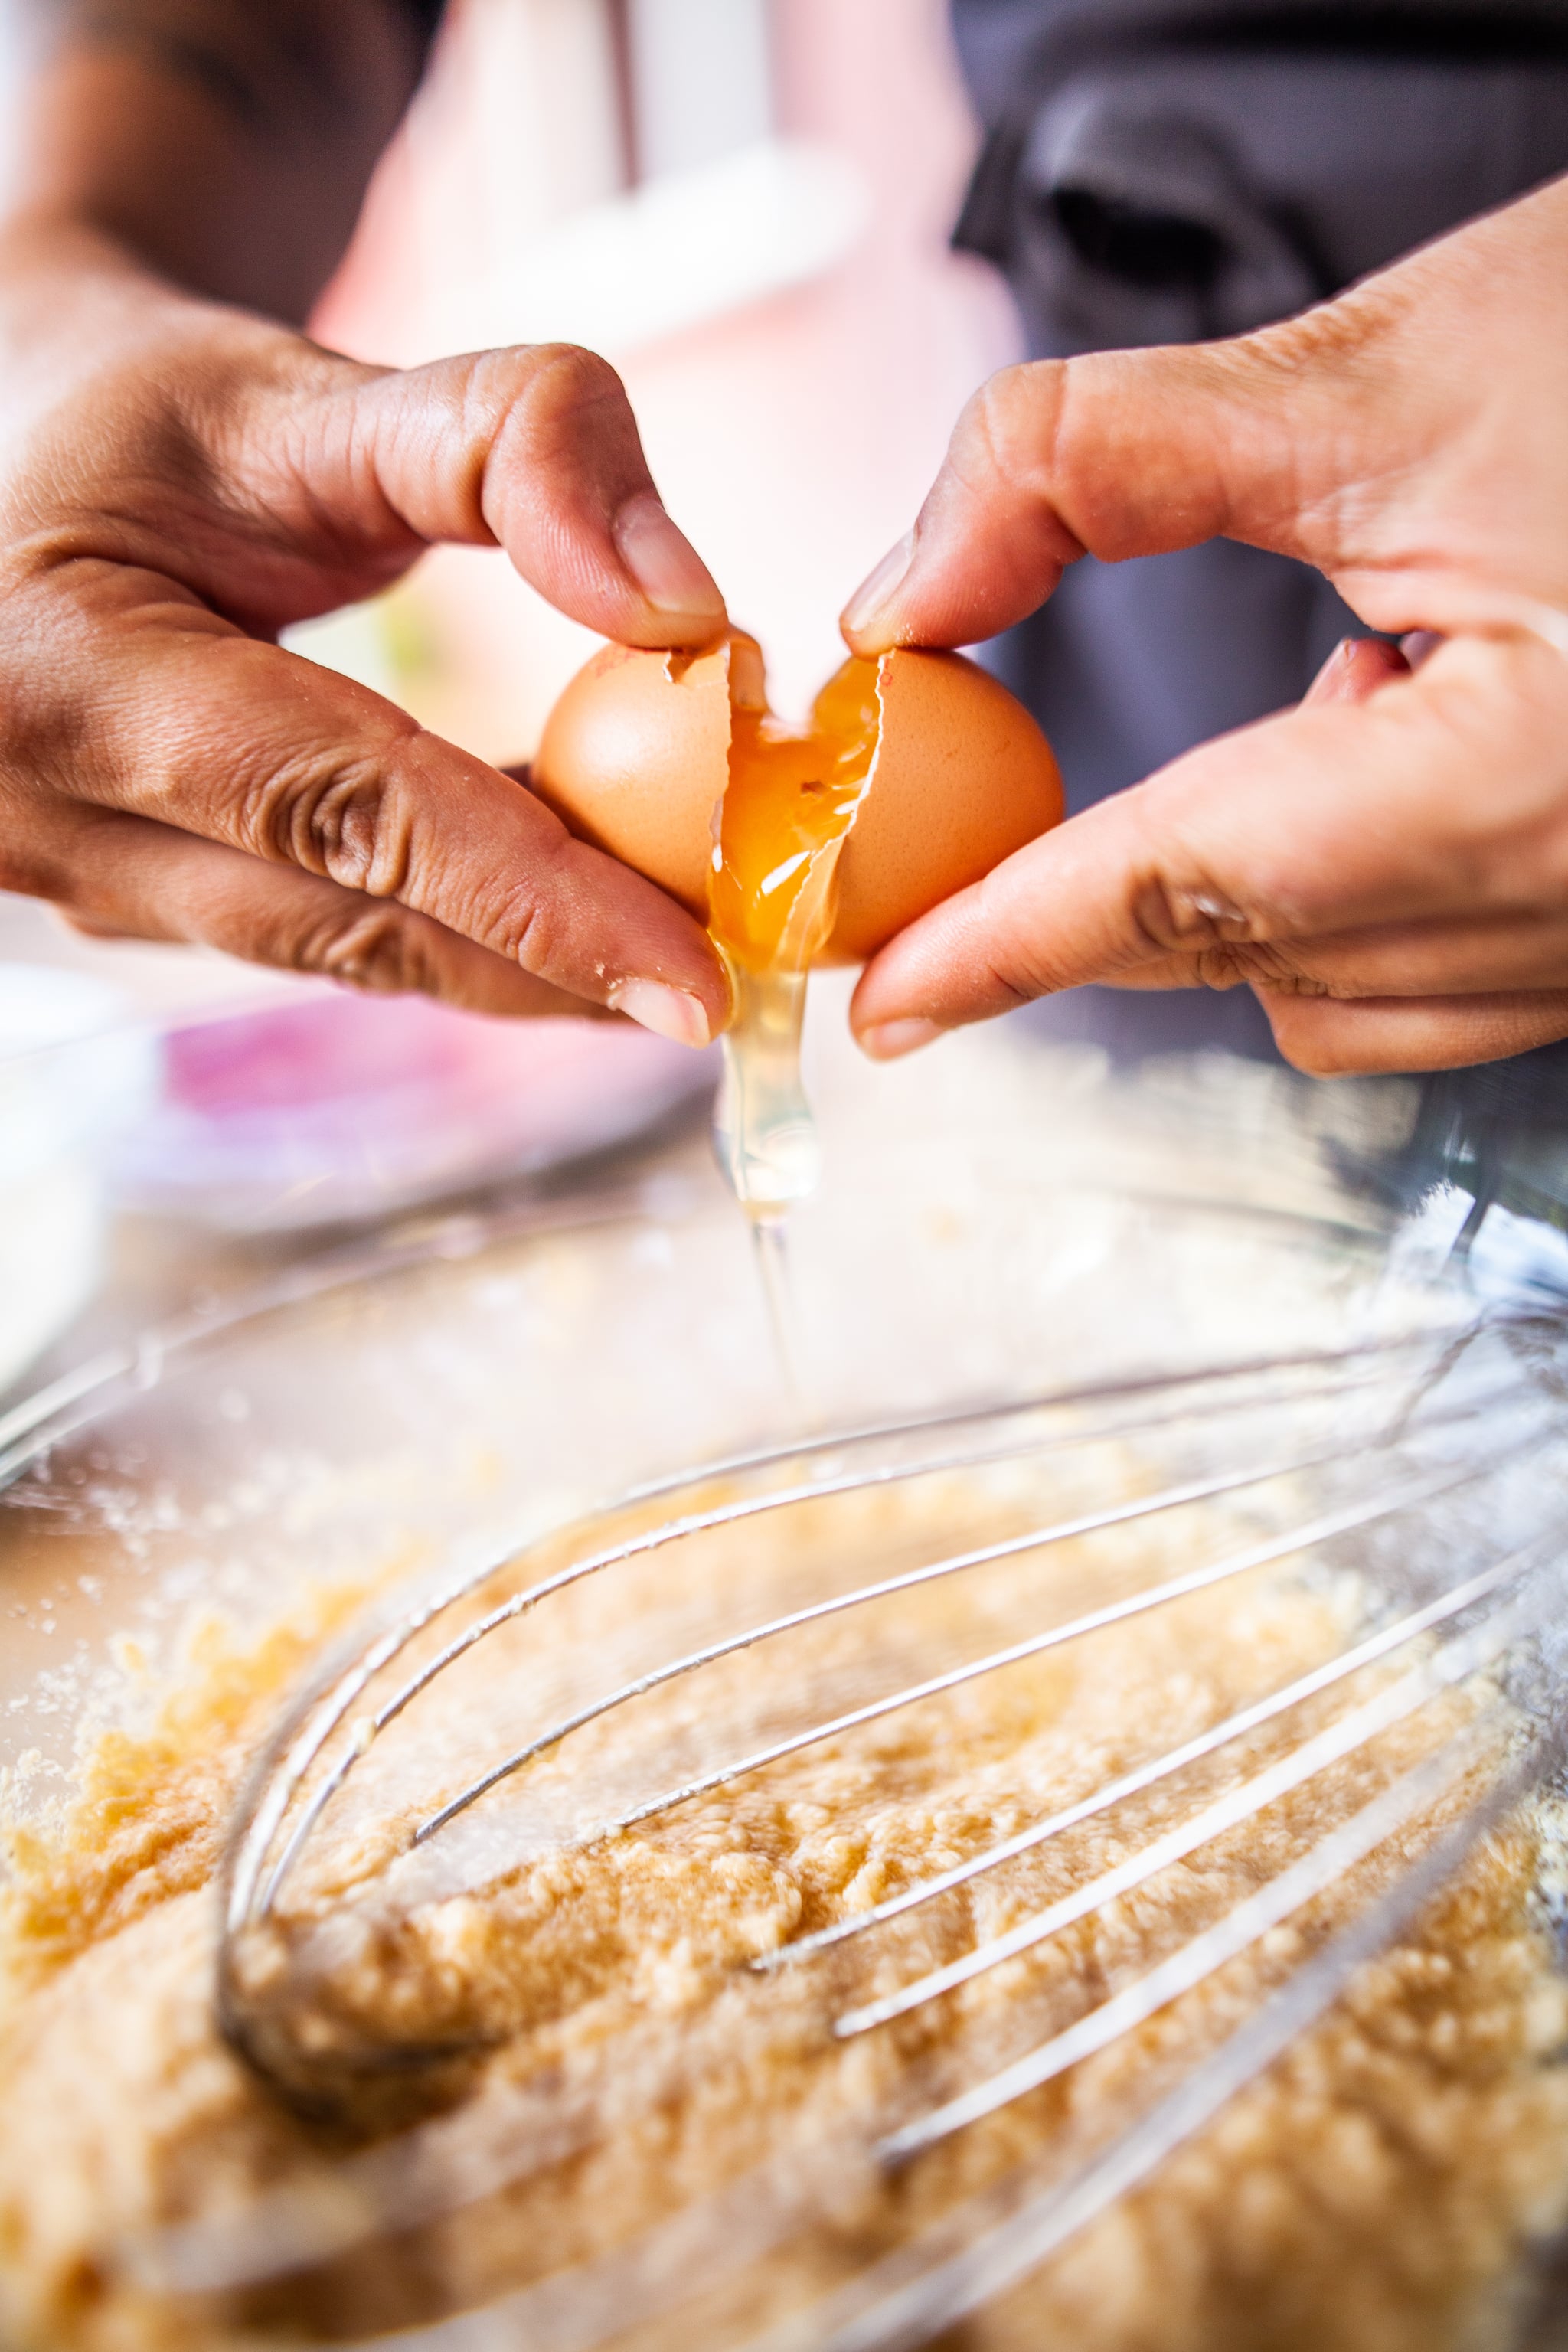 Cette photographie présente une personne en train de cuisiner, casser un œuf dans une préparation sucrée pour la réalisation d'un gâteau.